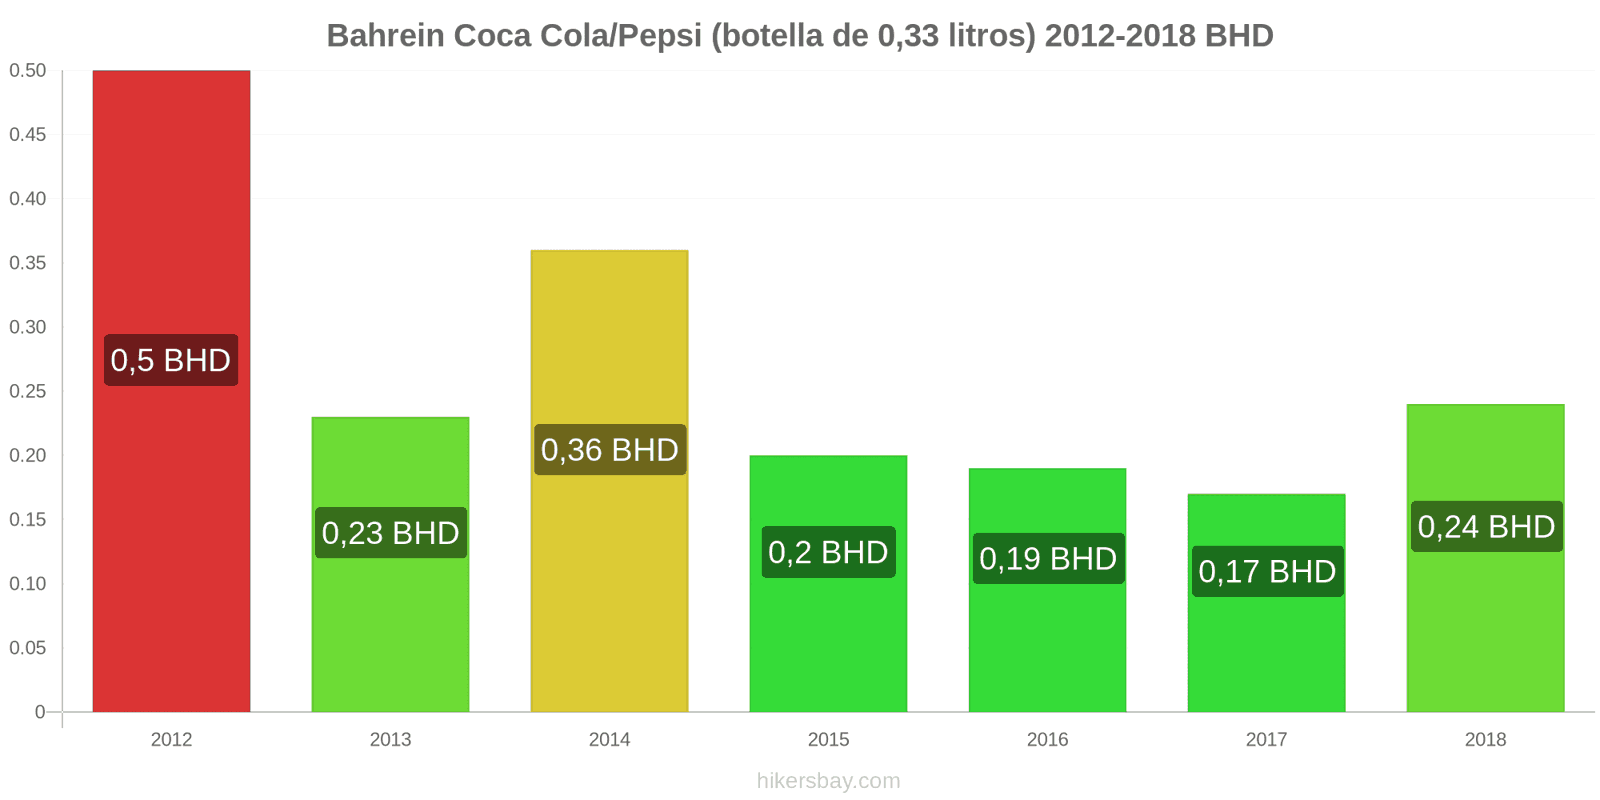 Bahrein cambios de precios Coca-Cola/Pepsi (botella de 0.33 litros) hikersbay.com